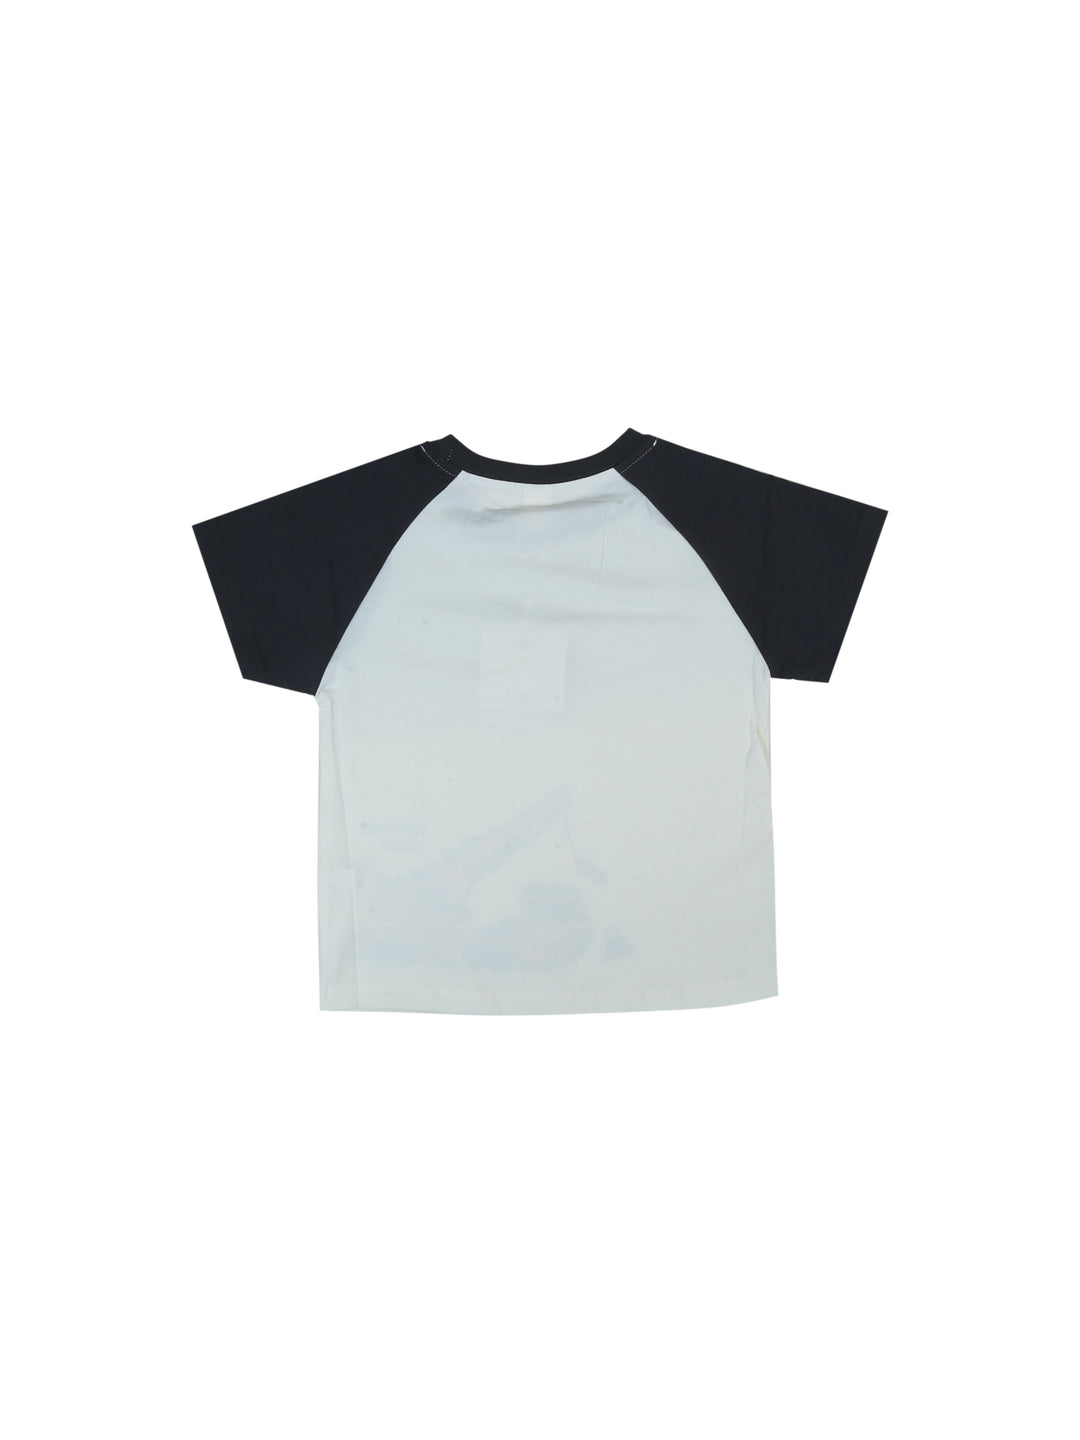 Imp Boys H/S T-Shirt #T19303-24S (S-24)